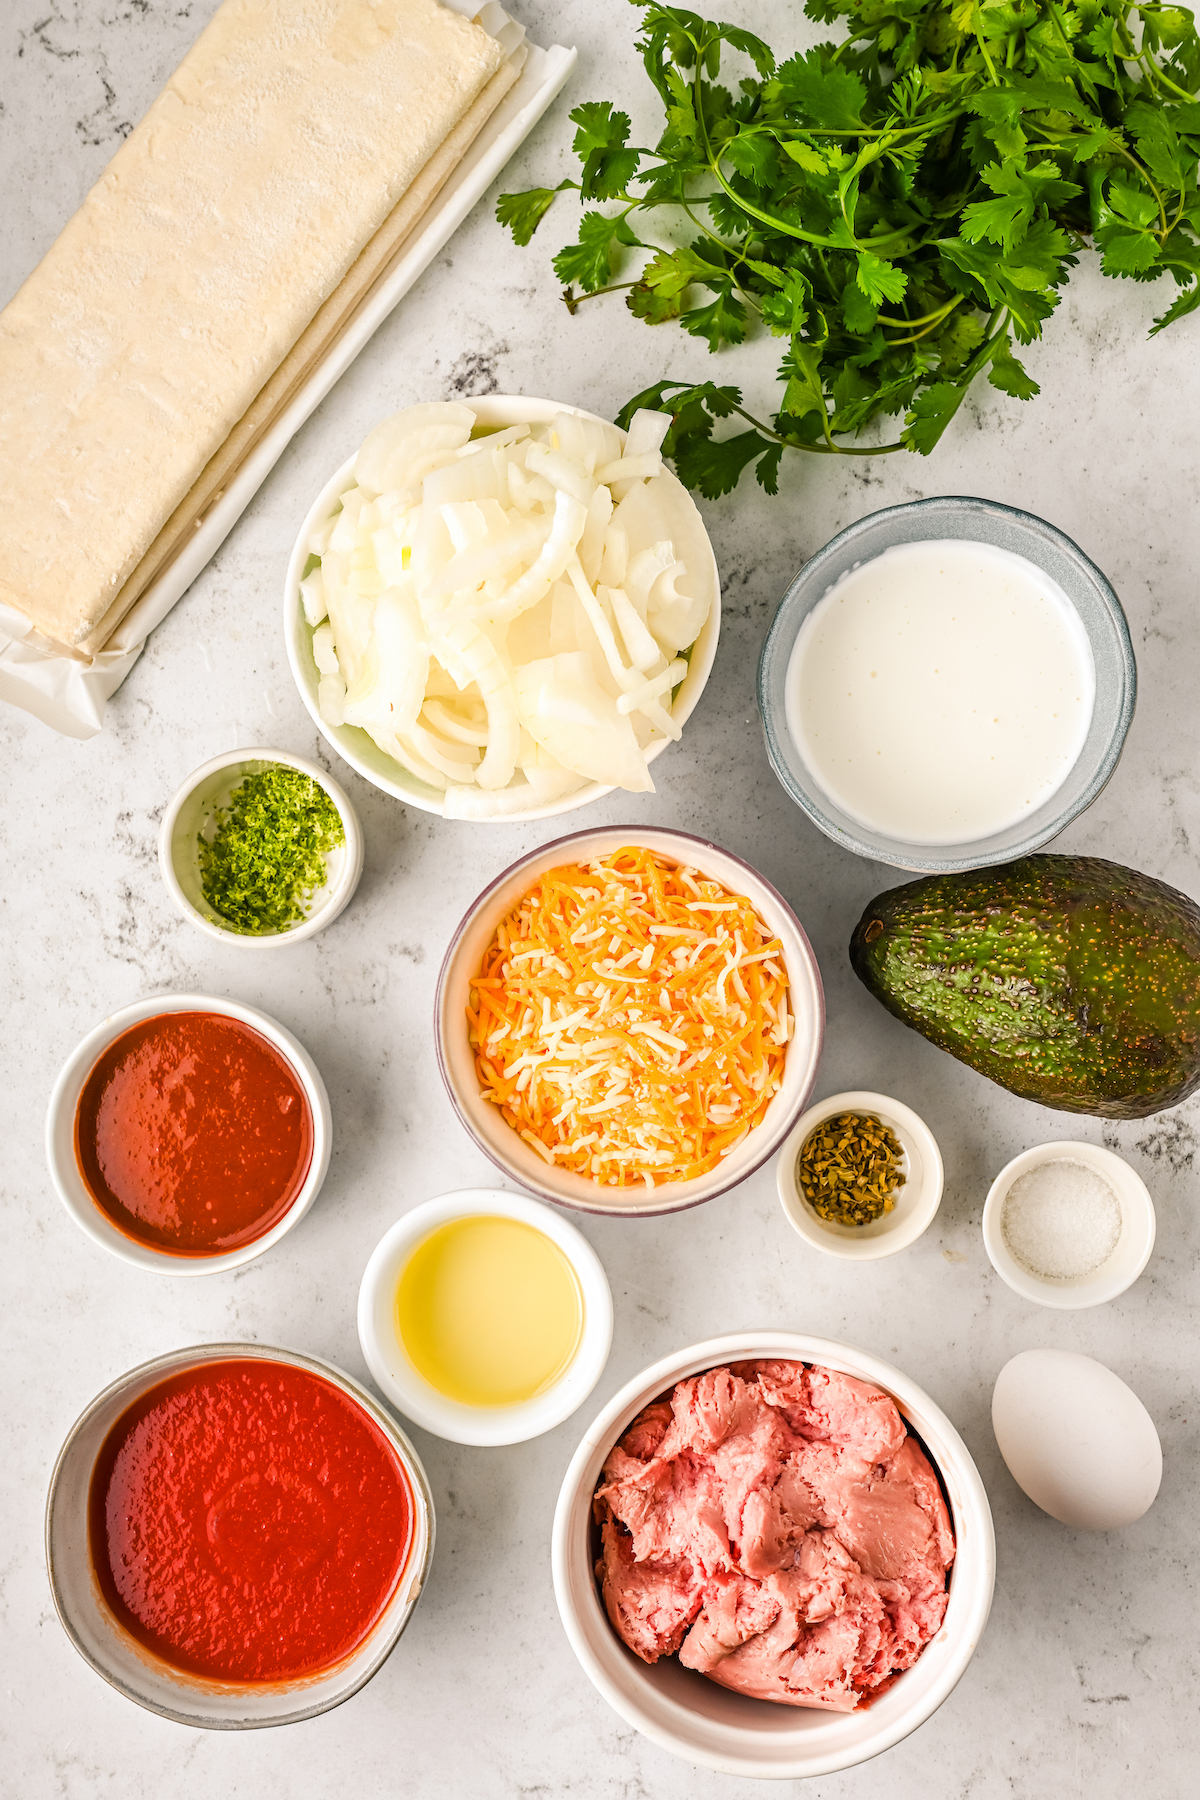 Ingredients for homemade chicken empanadas.